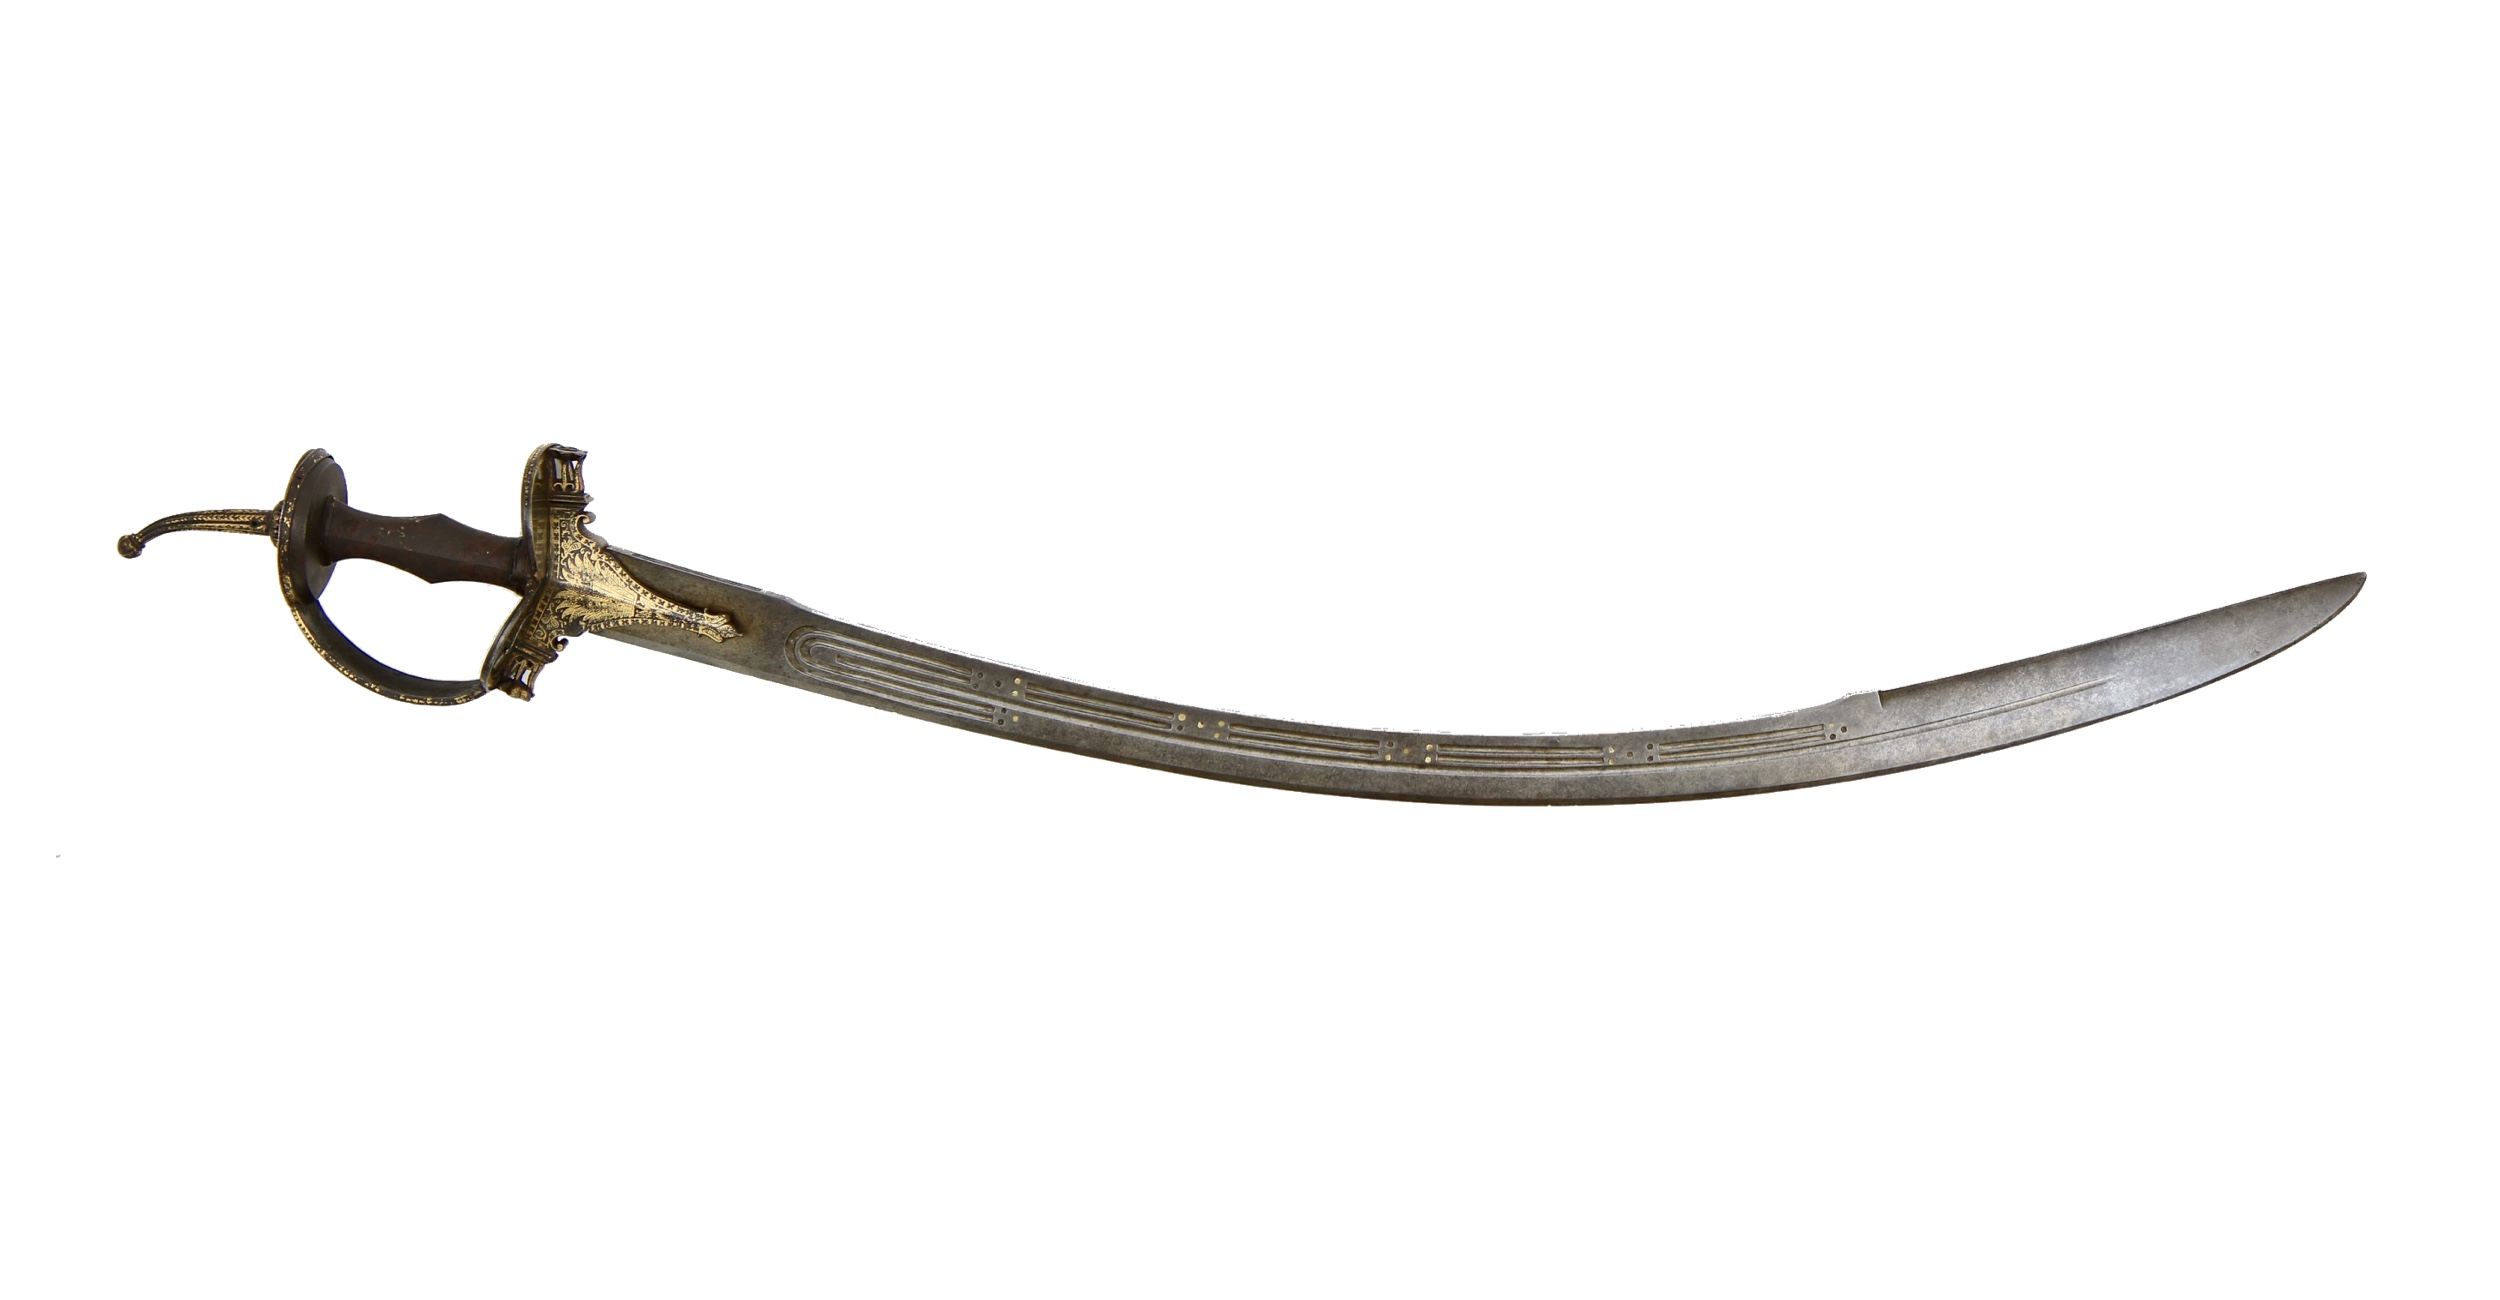 Large Mughal saber